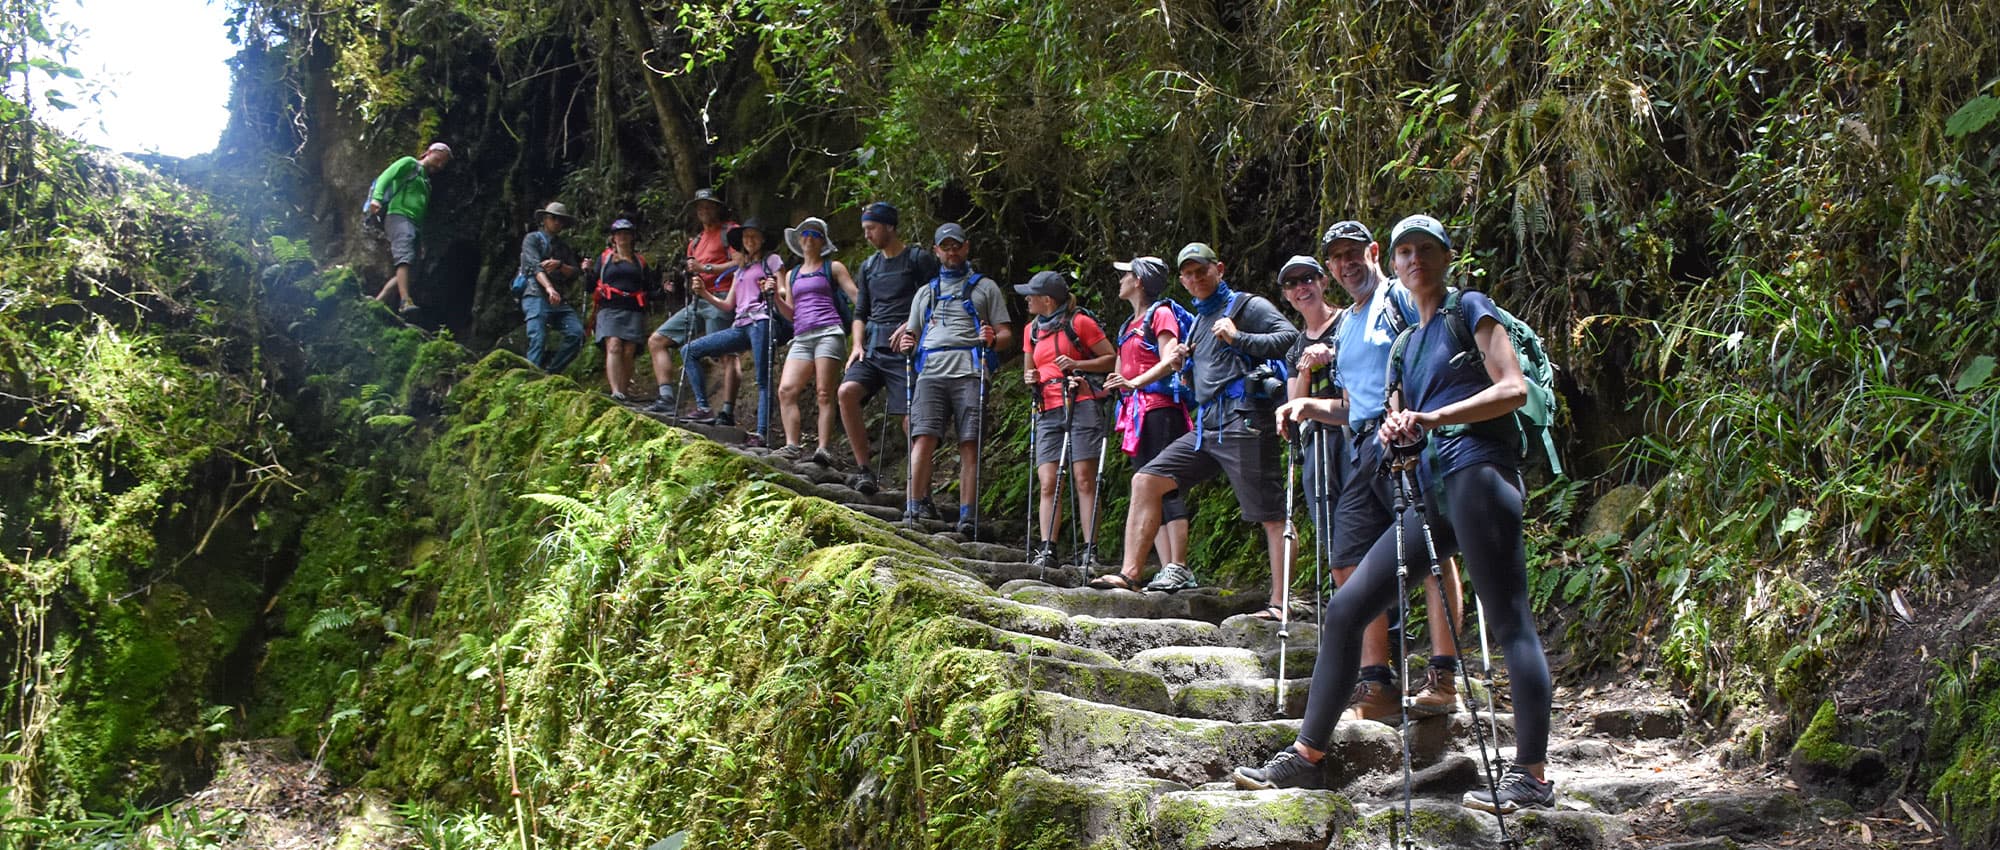 Inca trail permits to Machu Picchu